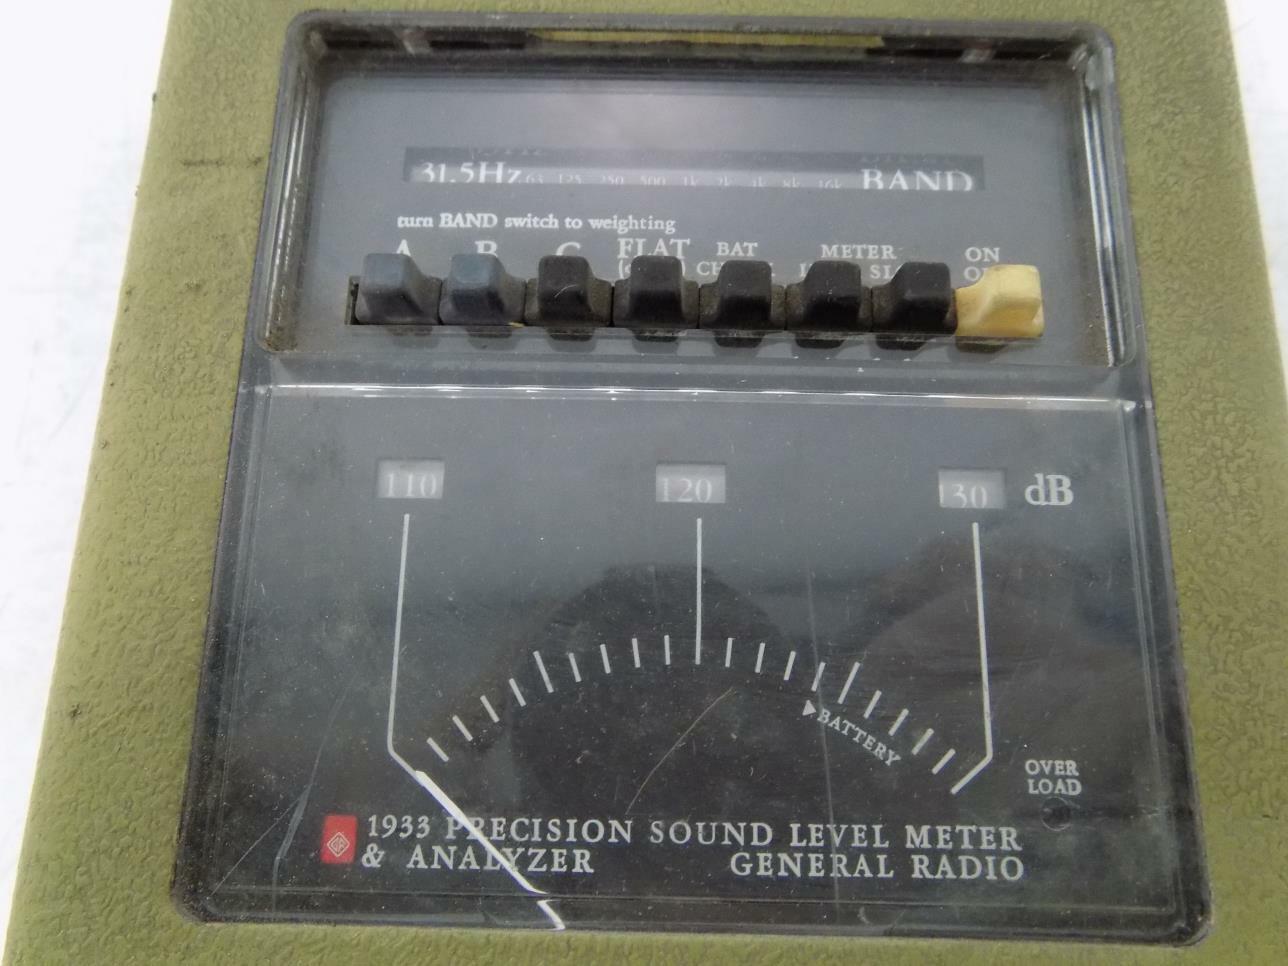 一般收音机精度声级计 & 分析仪 1933 